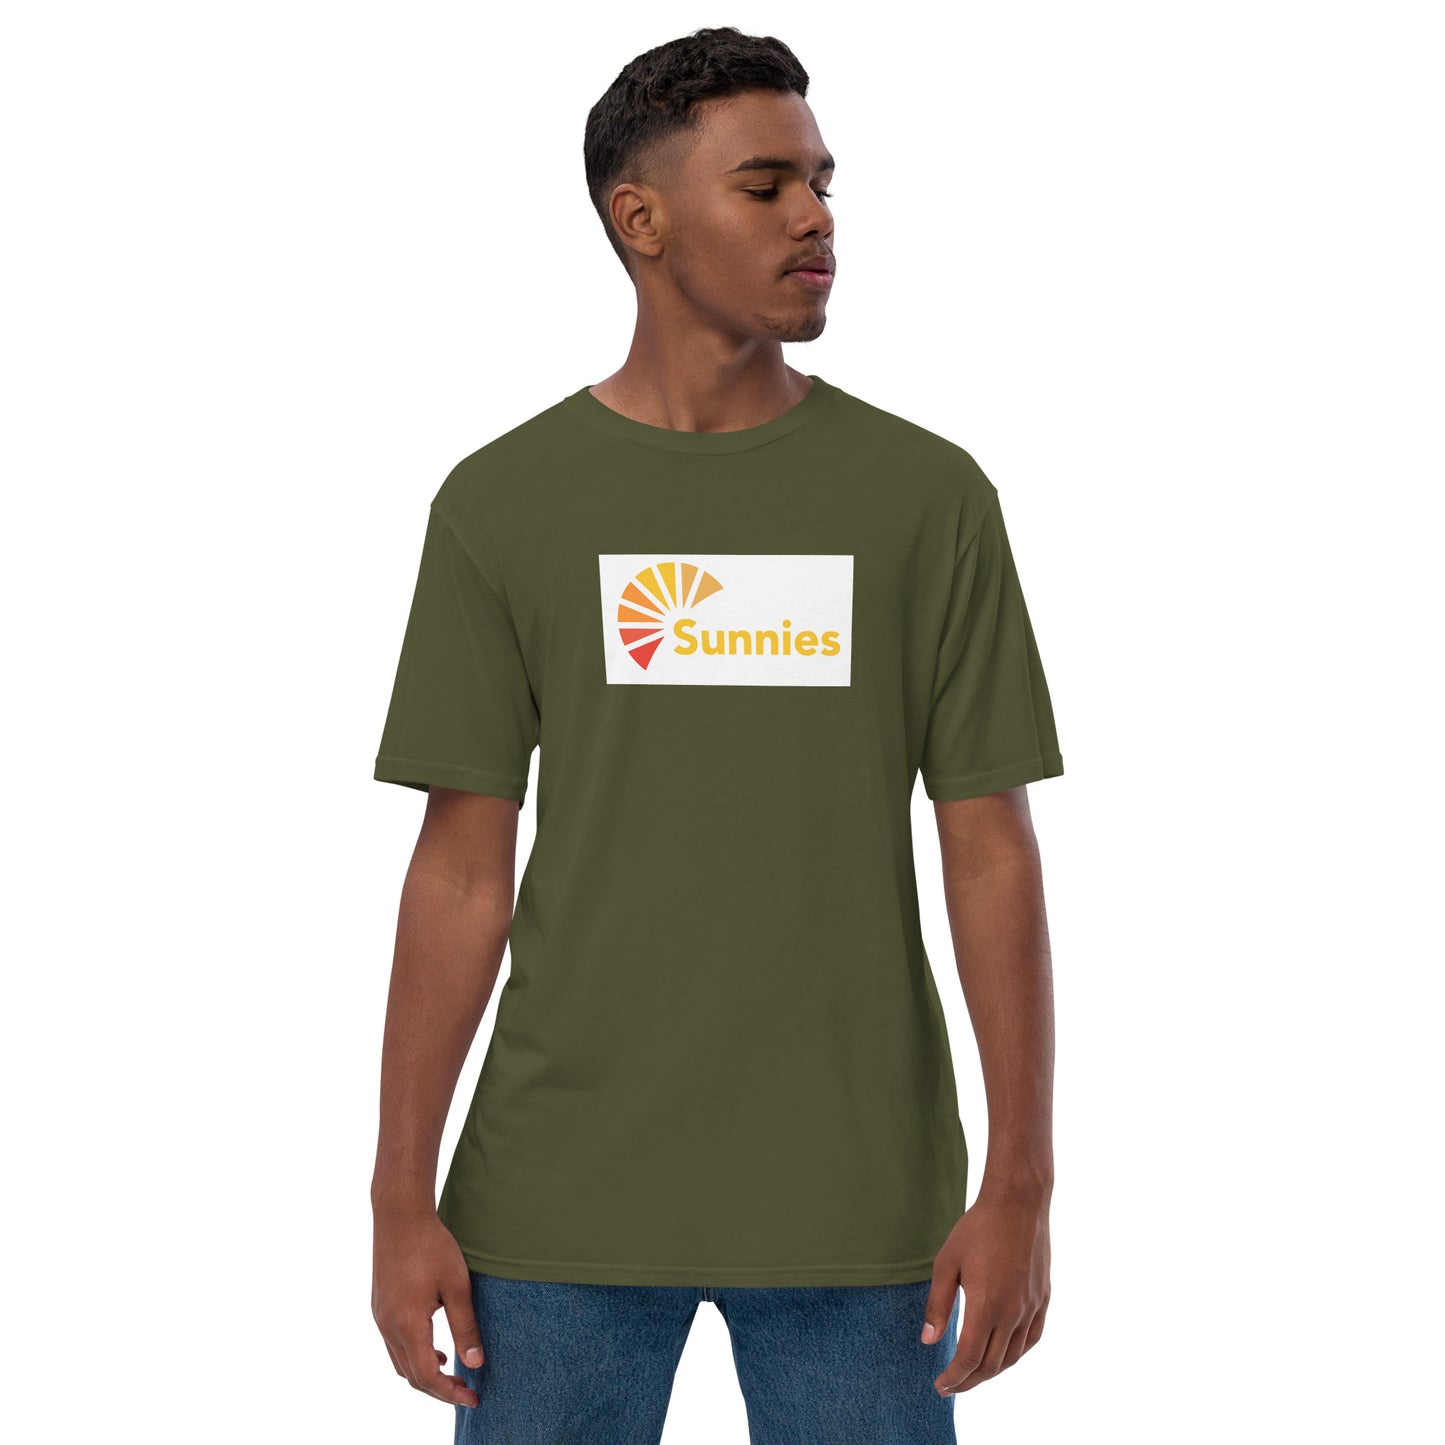 Sunnies Premium T-Shirt